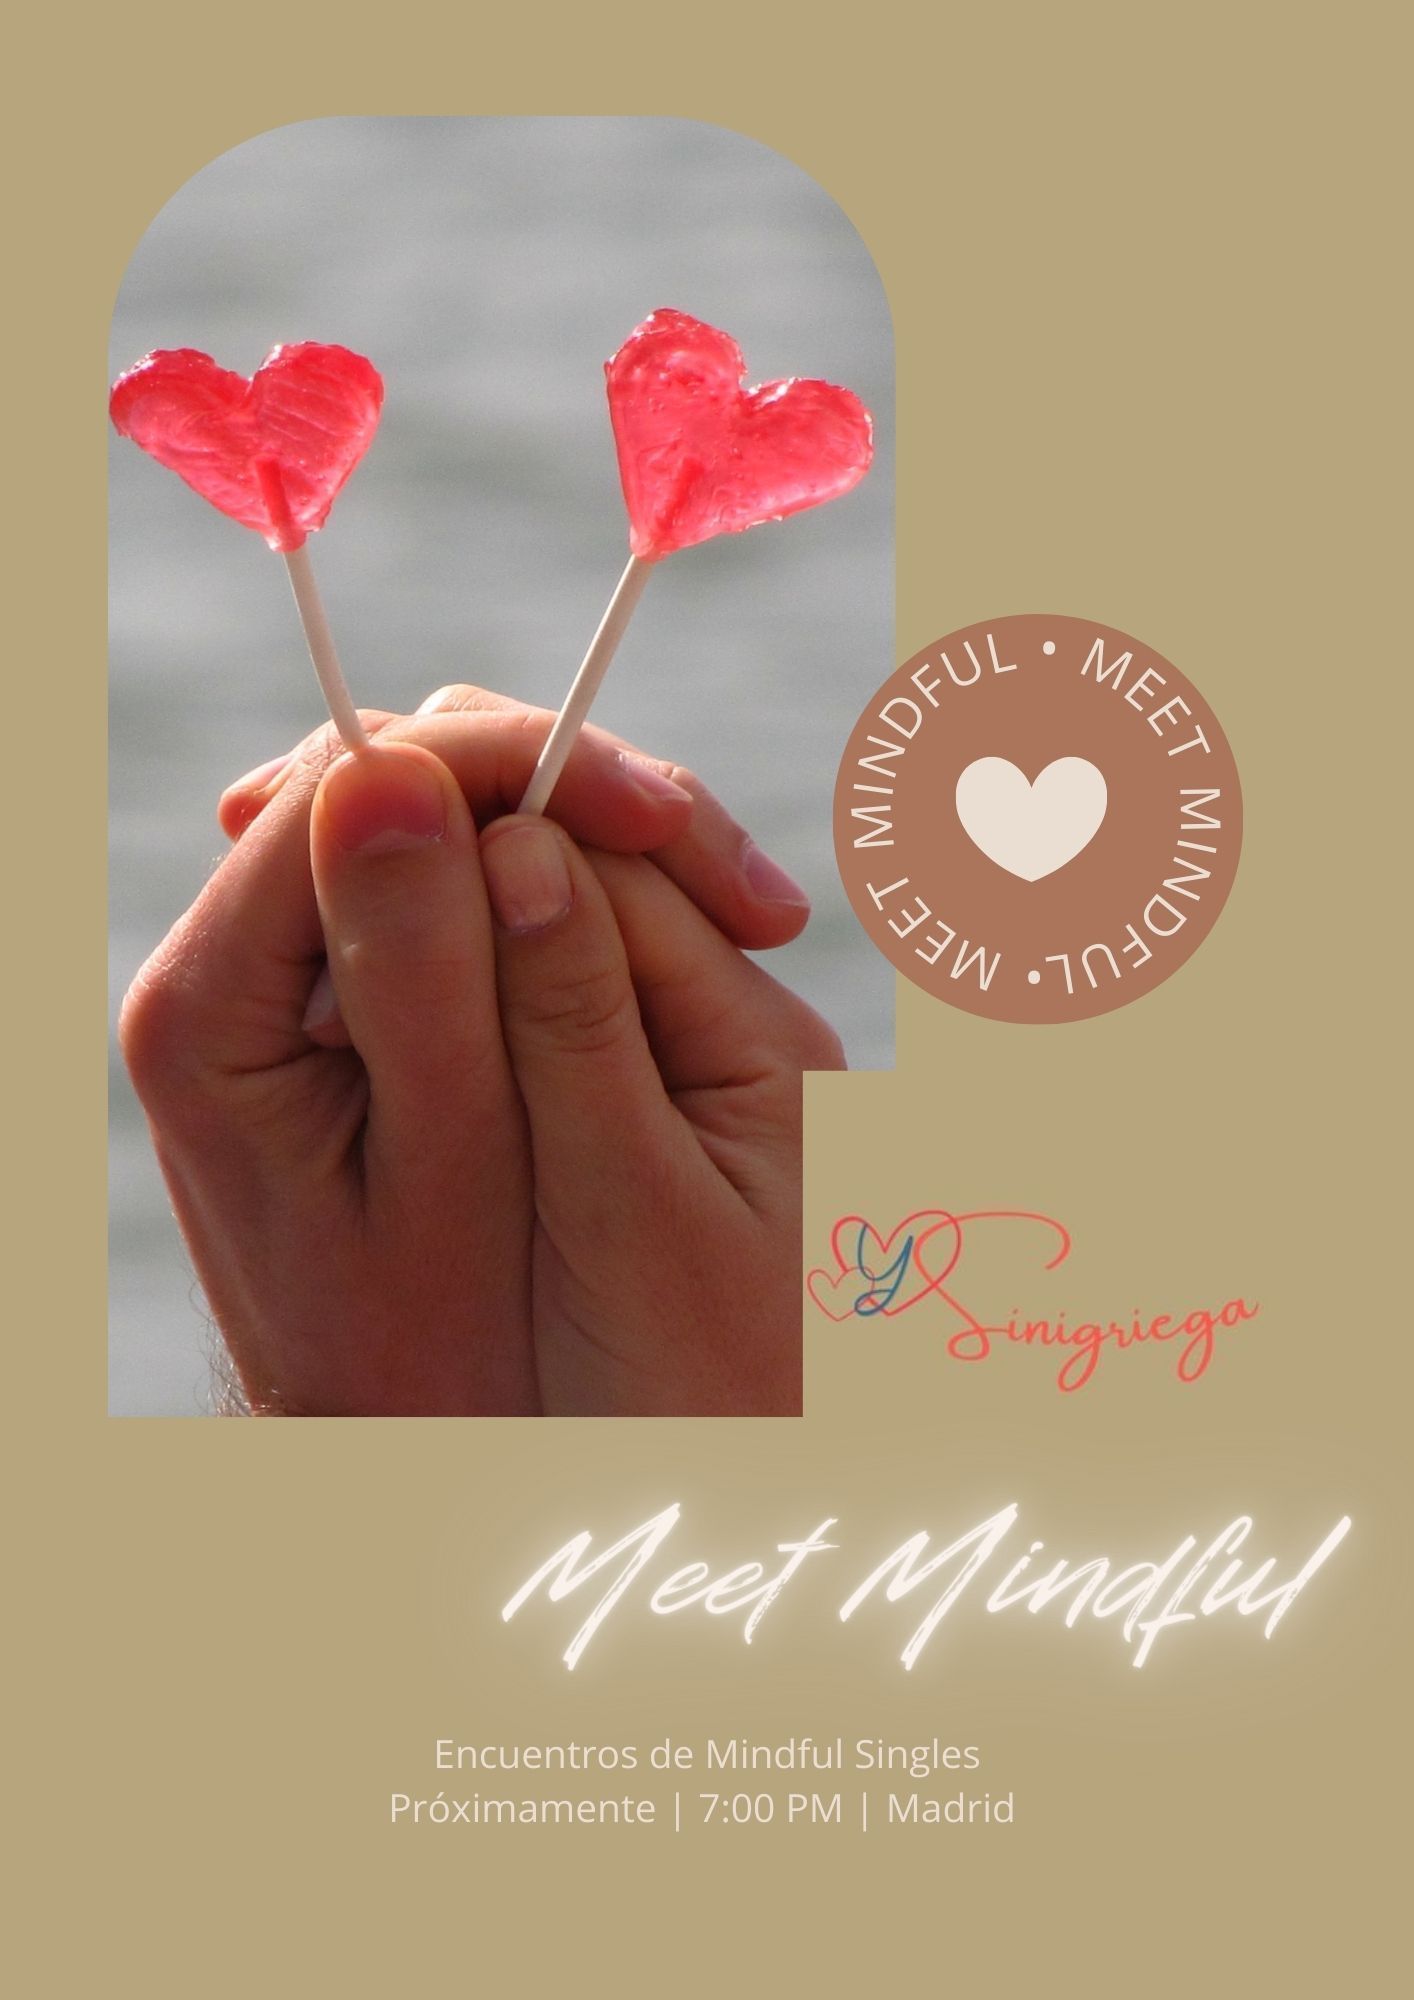 Meet Mindful Sinigriega